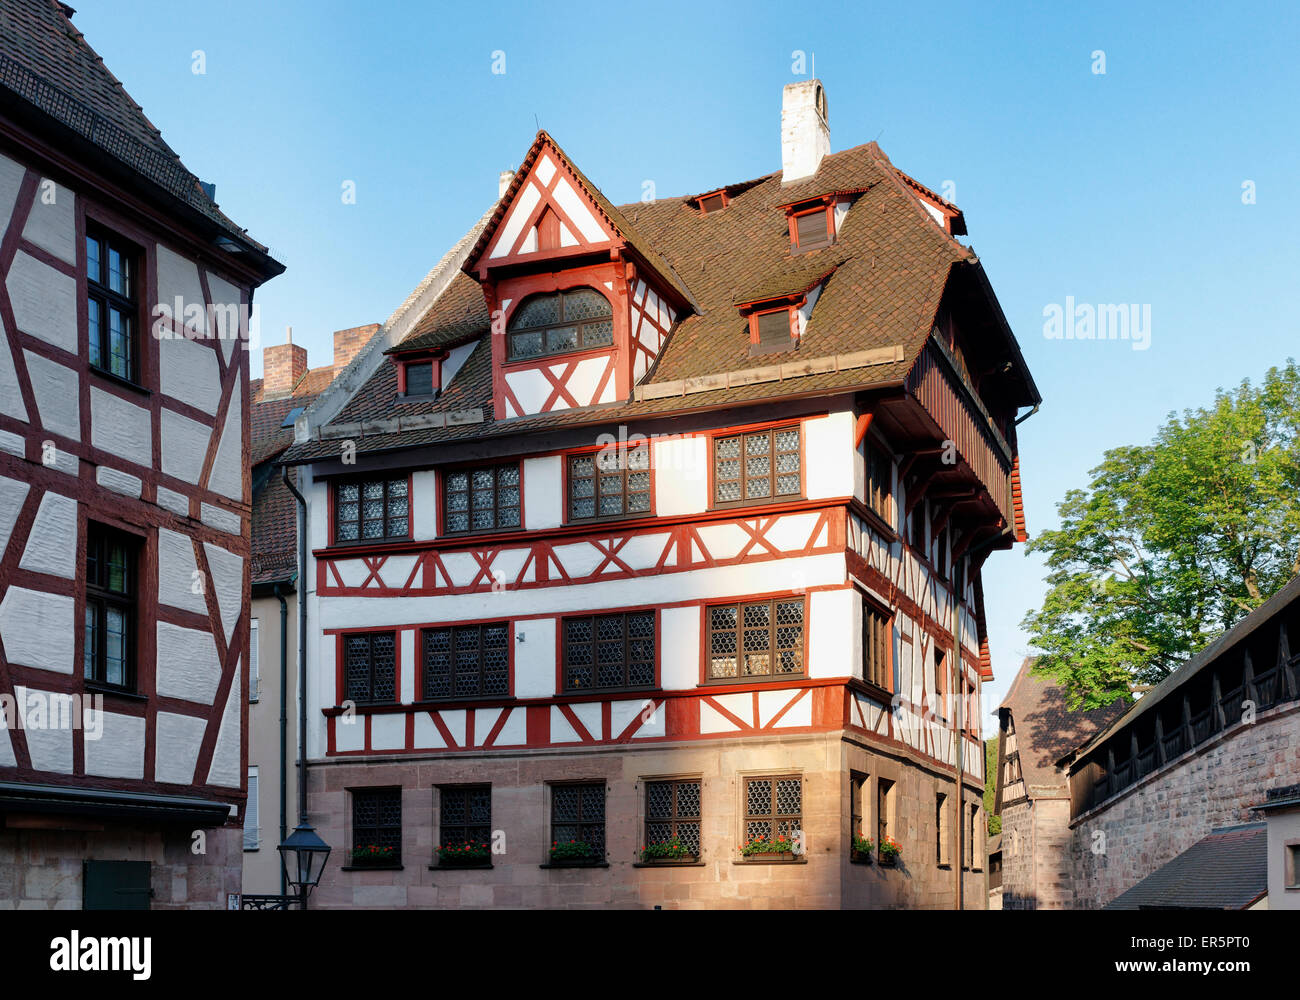 Albrecht Duerer House, Place of work and life of the artist Albrecht Duerer 1471-1528, Tiergaertnertorplatz Square, Nuremberg, M Stock Photo